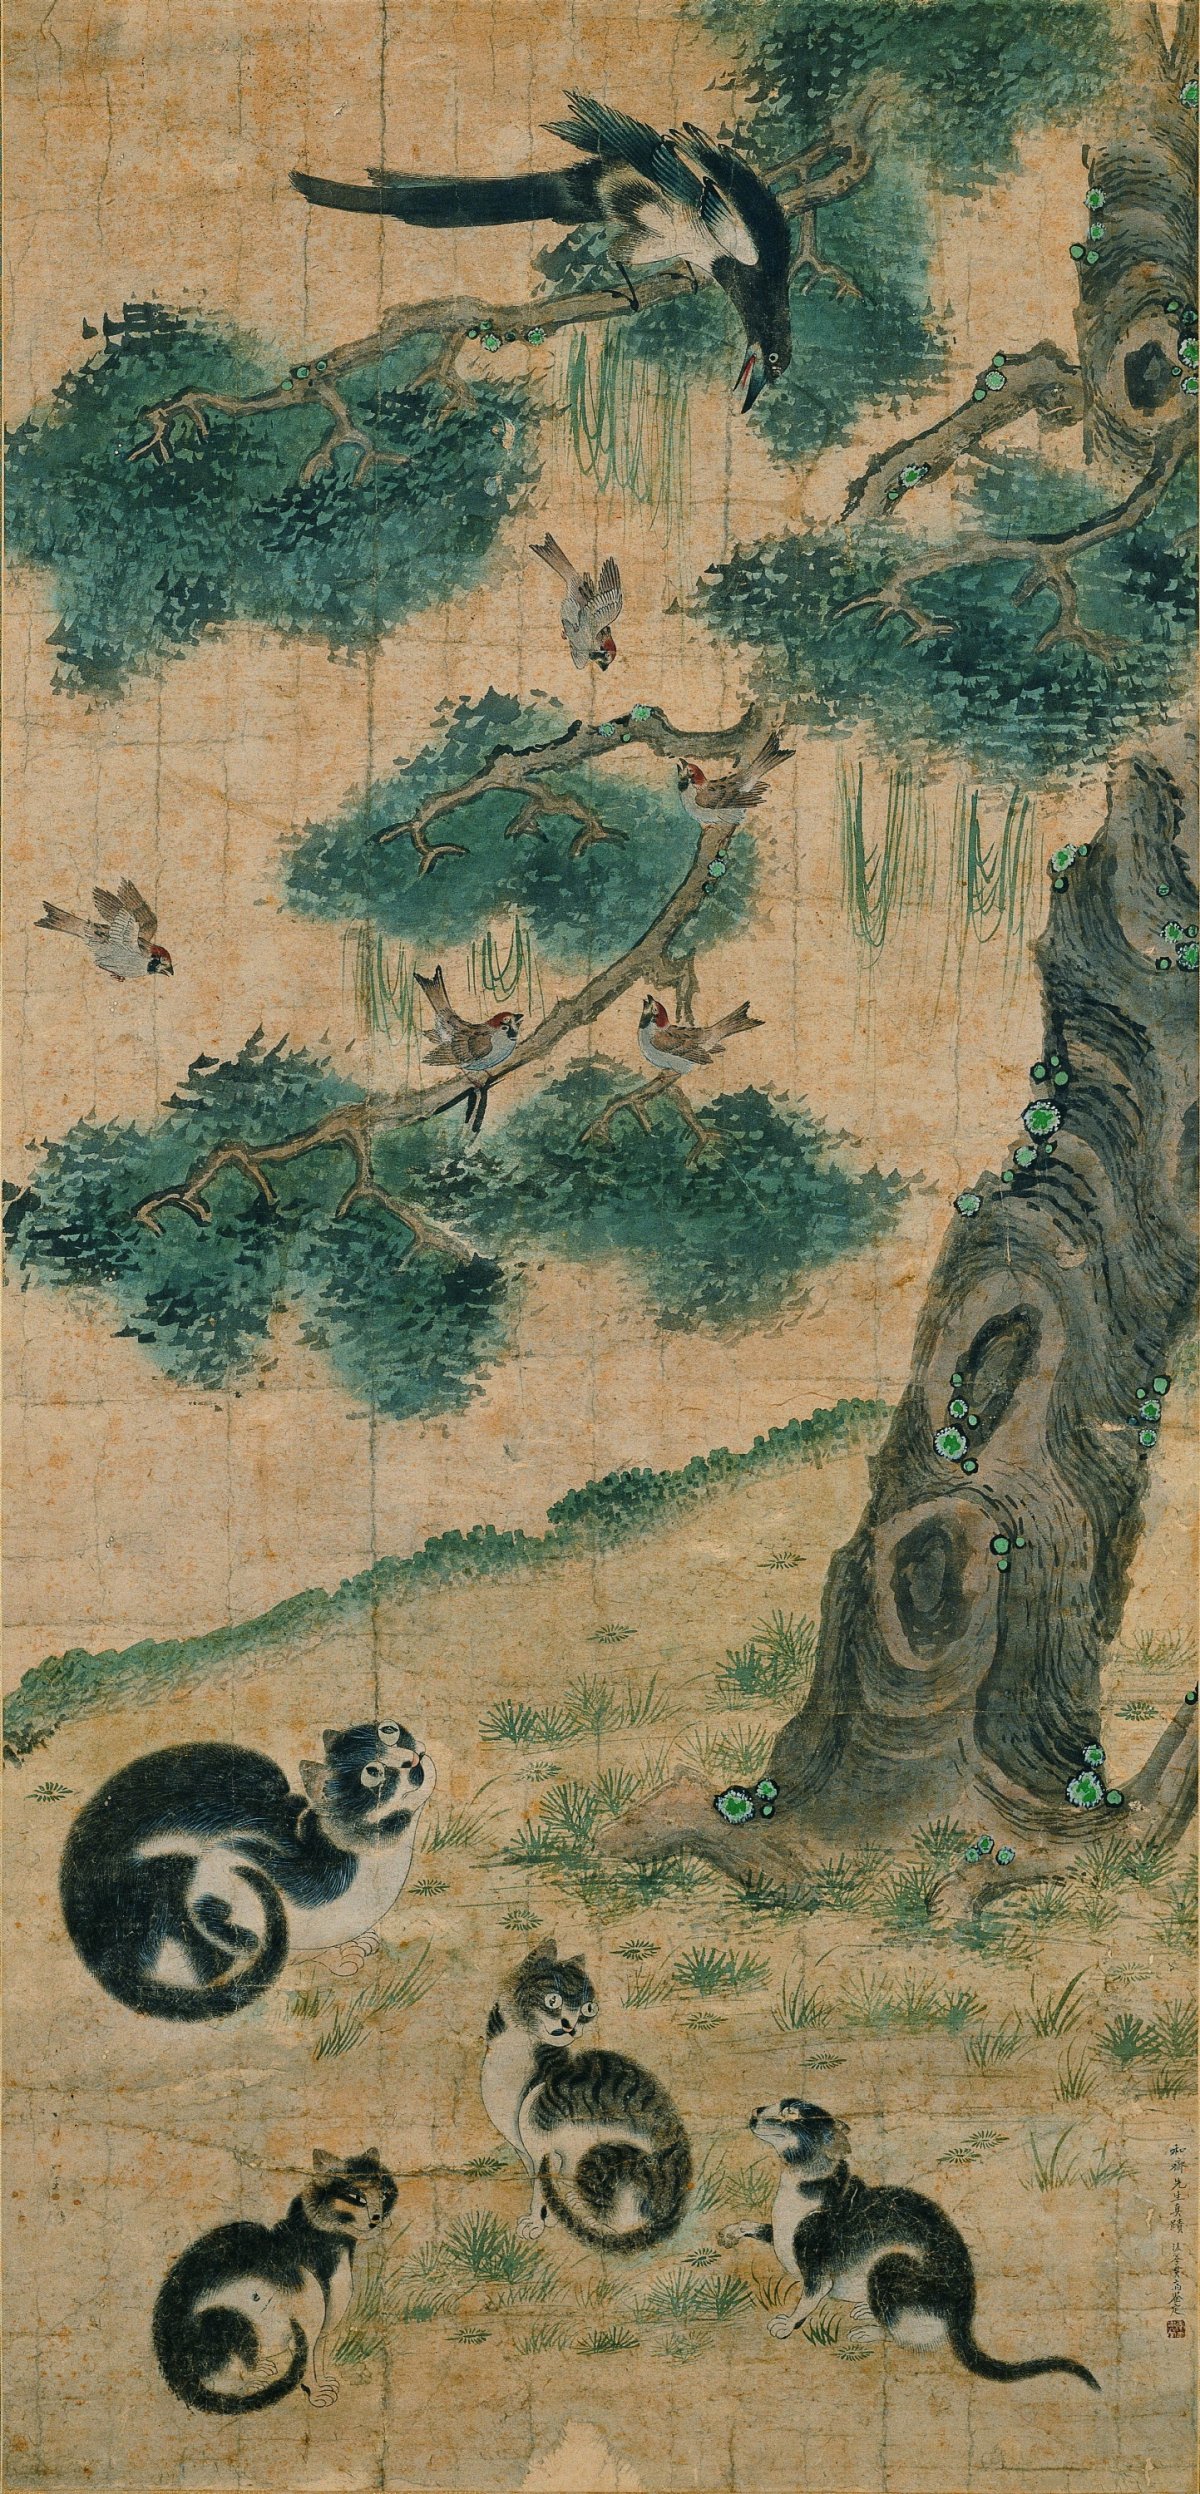 고양이를 잘 그린다고 해서 ‘변 고양이’라는 별명으로 불린 조선 후기 화가 변상벽의 묘작도. 조선시대 고양이는 장수의 상징으로 여겨졌다.  국립민속박물관 제공